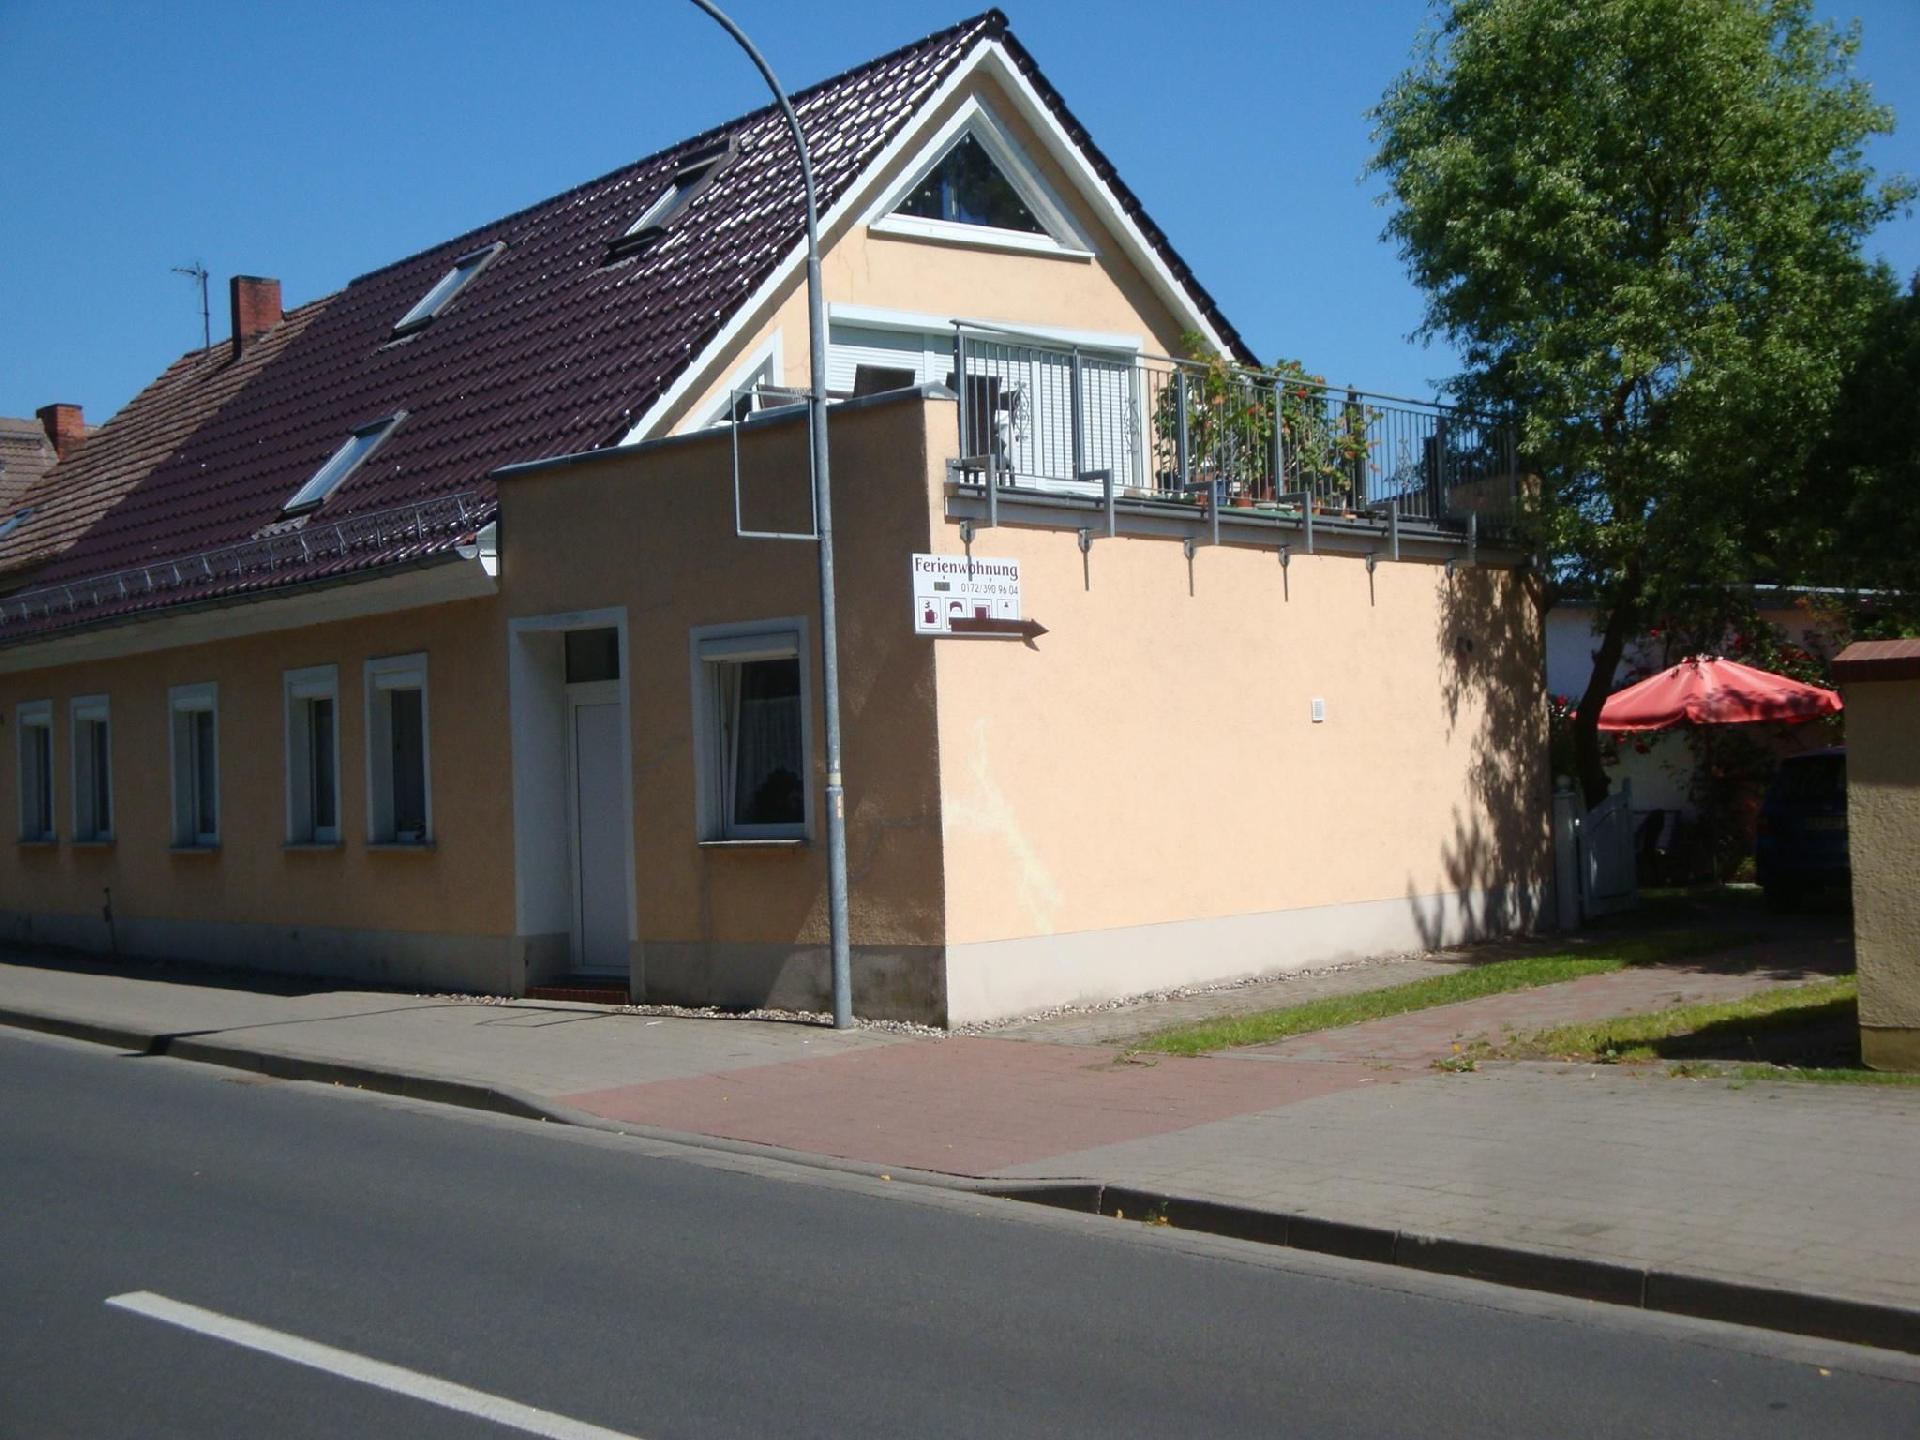 Appartement in Ueckermünde mit Grill Ferienhaus an der Ostsee